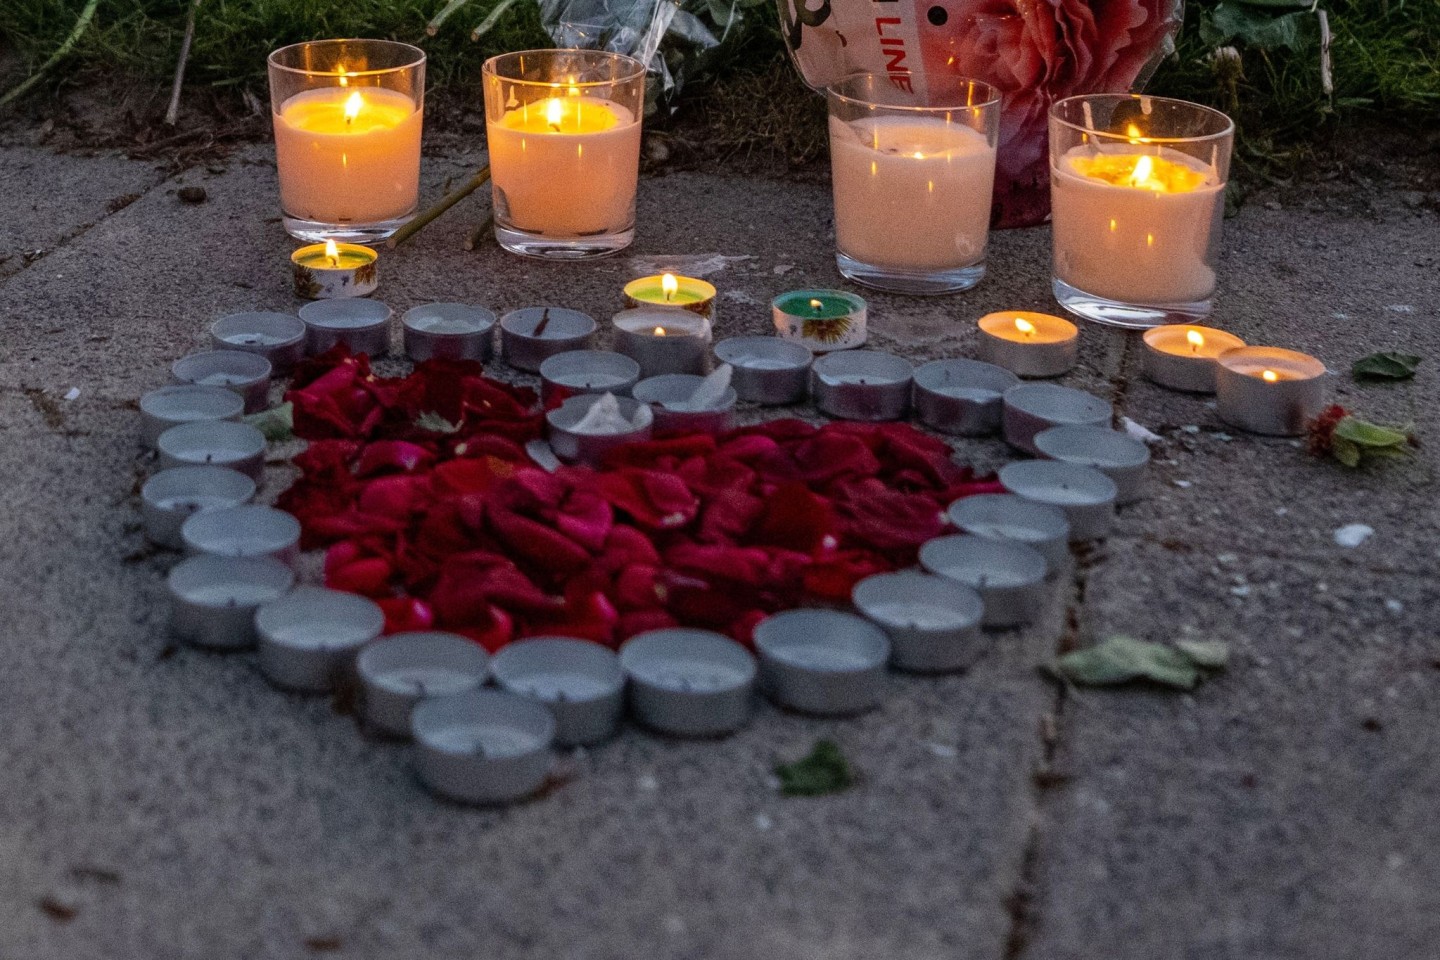 Kerzen und Blumen am Ort einer tödlichen Auseinandersetzung an einem Sportplatz in Bielefeld.